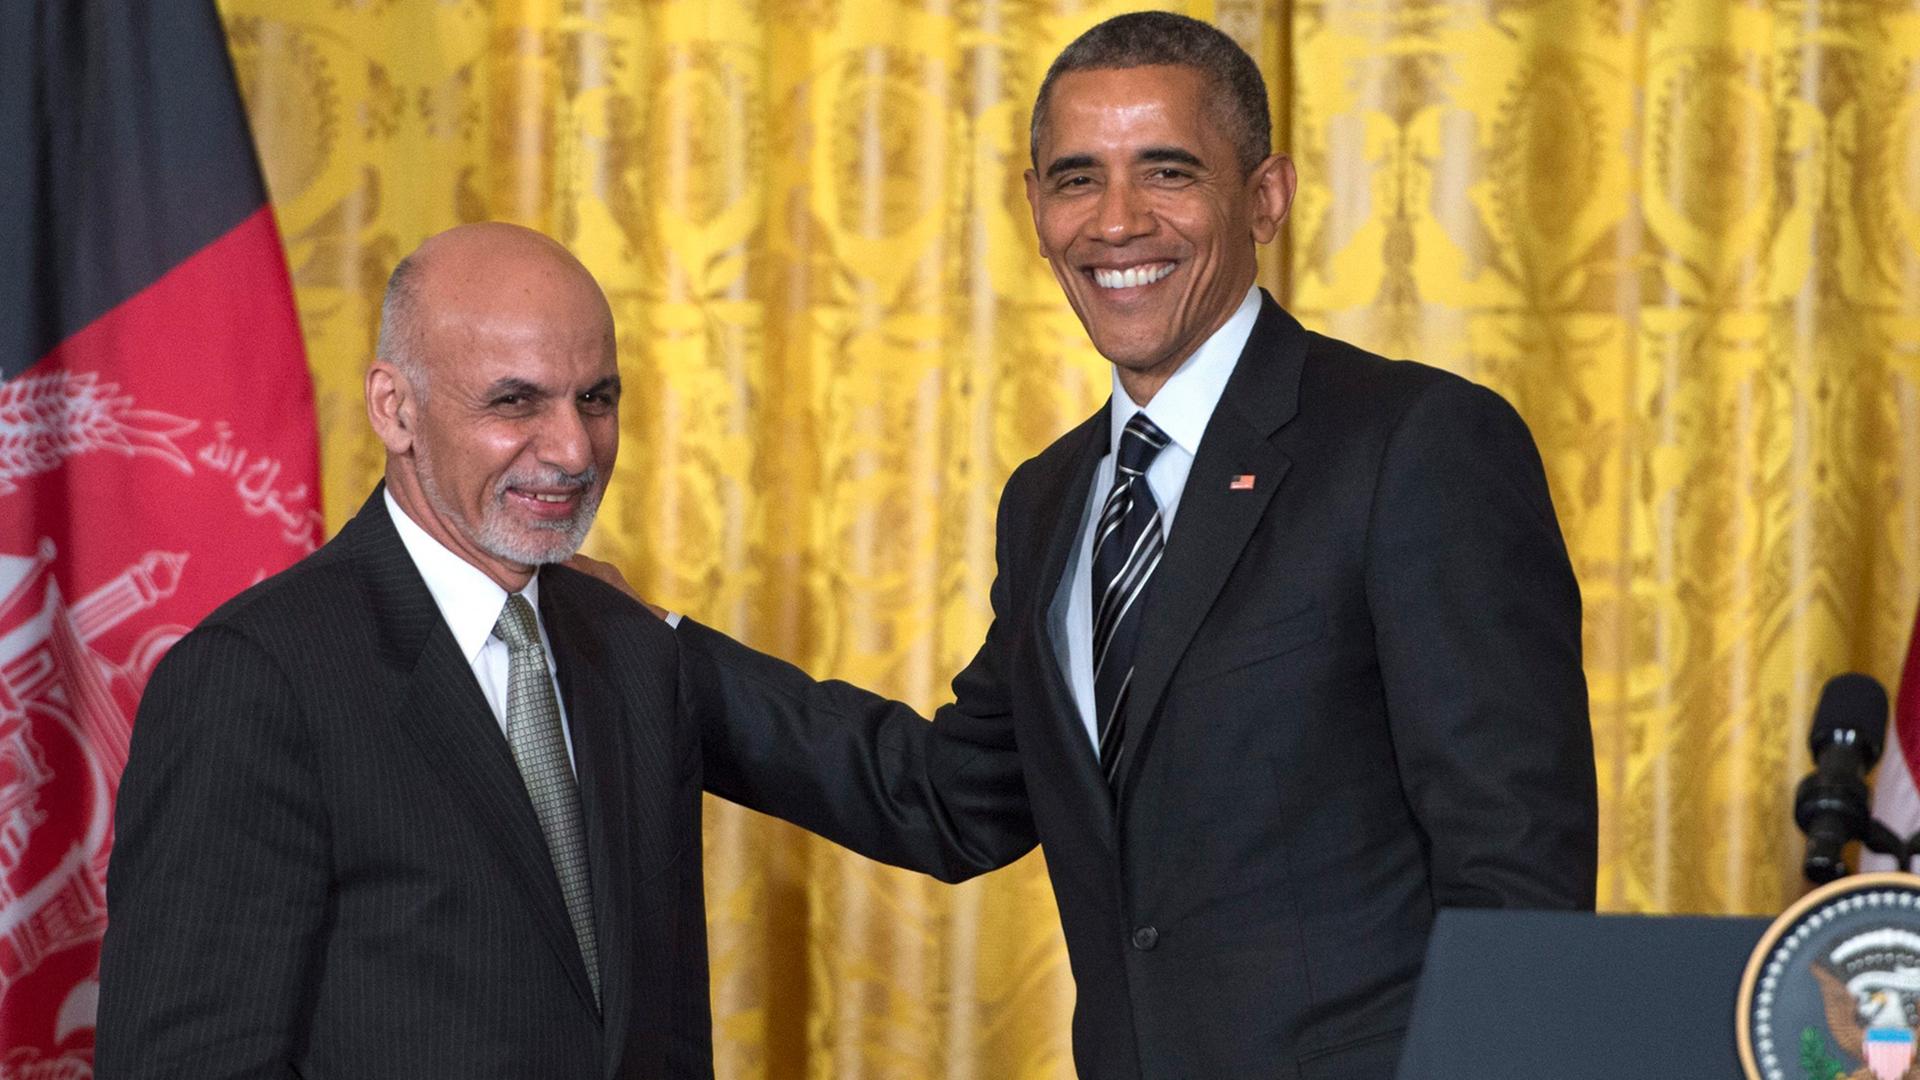 Im Pressekonferenzraum des Weißen Hauses: US-Präsident Obama und sein afghanischer Kollege Ghani lächeln in die Kameras, Obama hat seine Hand auf der Schulter Ghanis. 